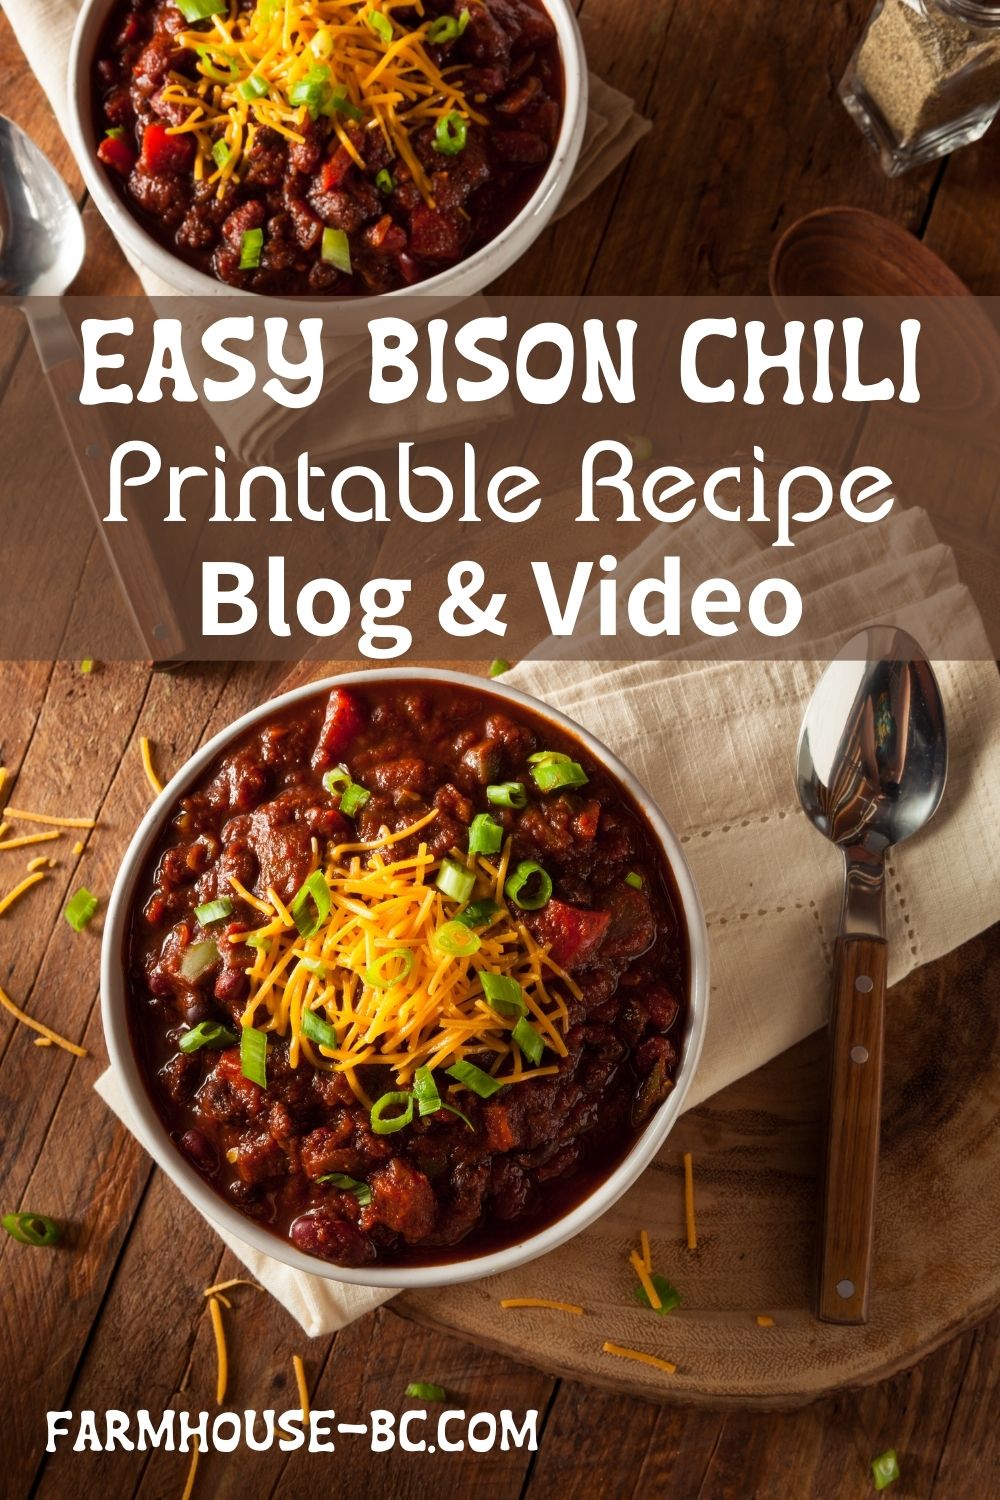 Easy bison chili to make